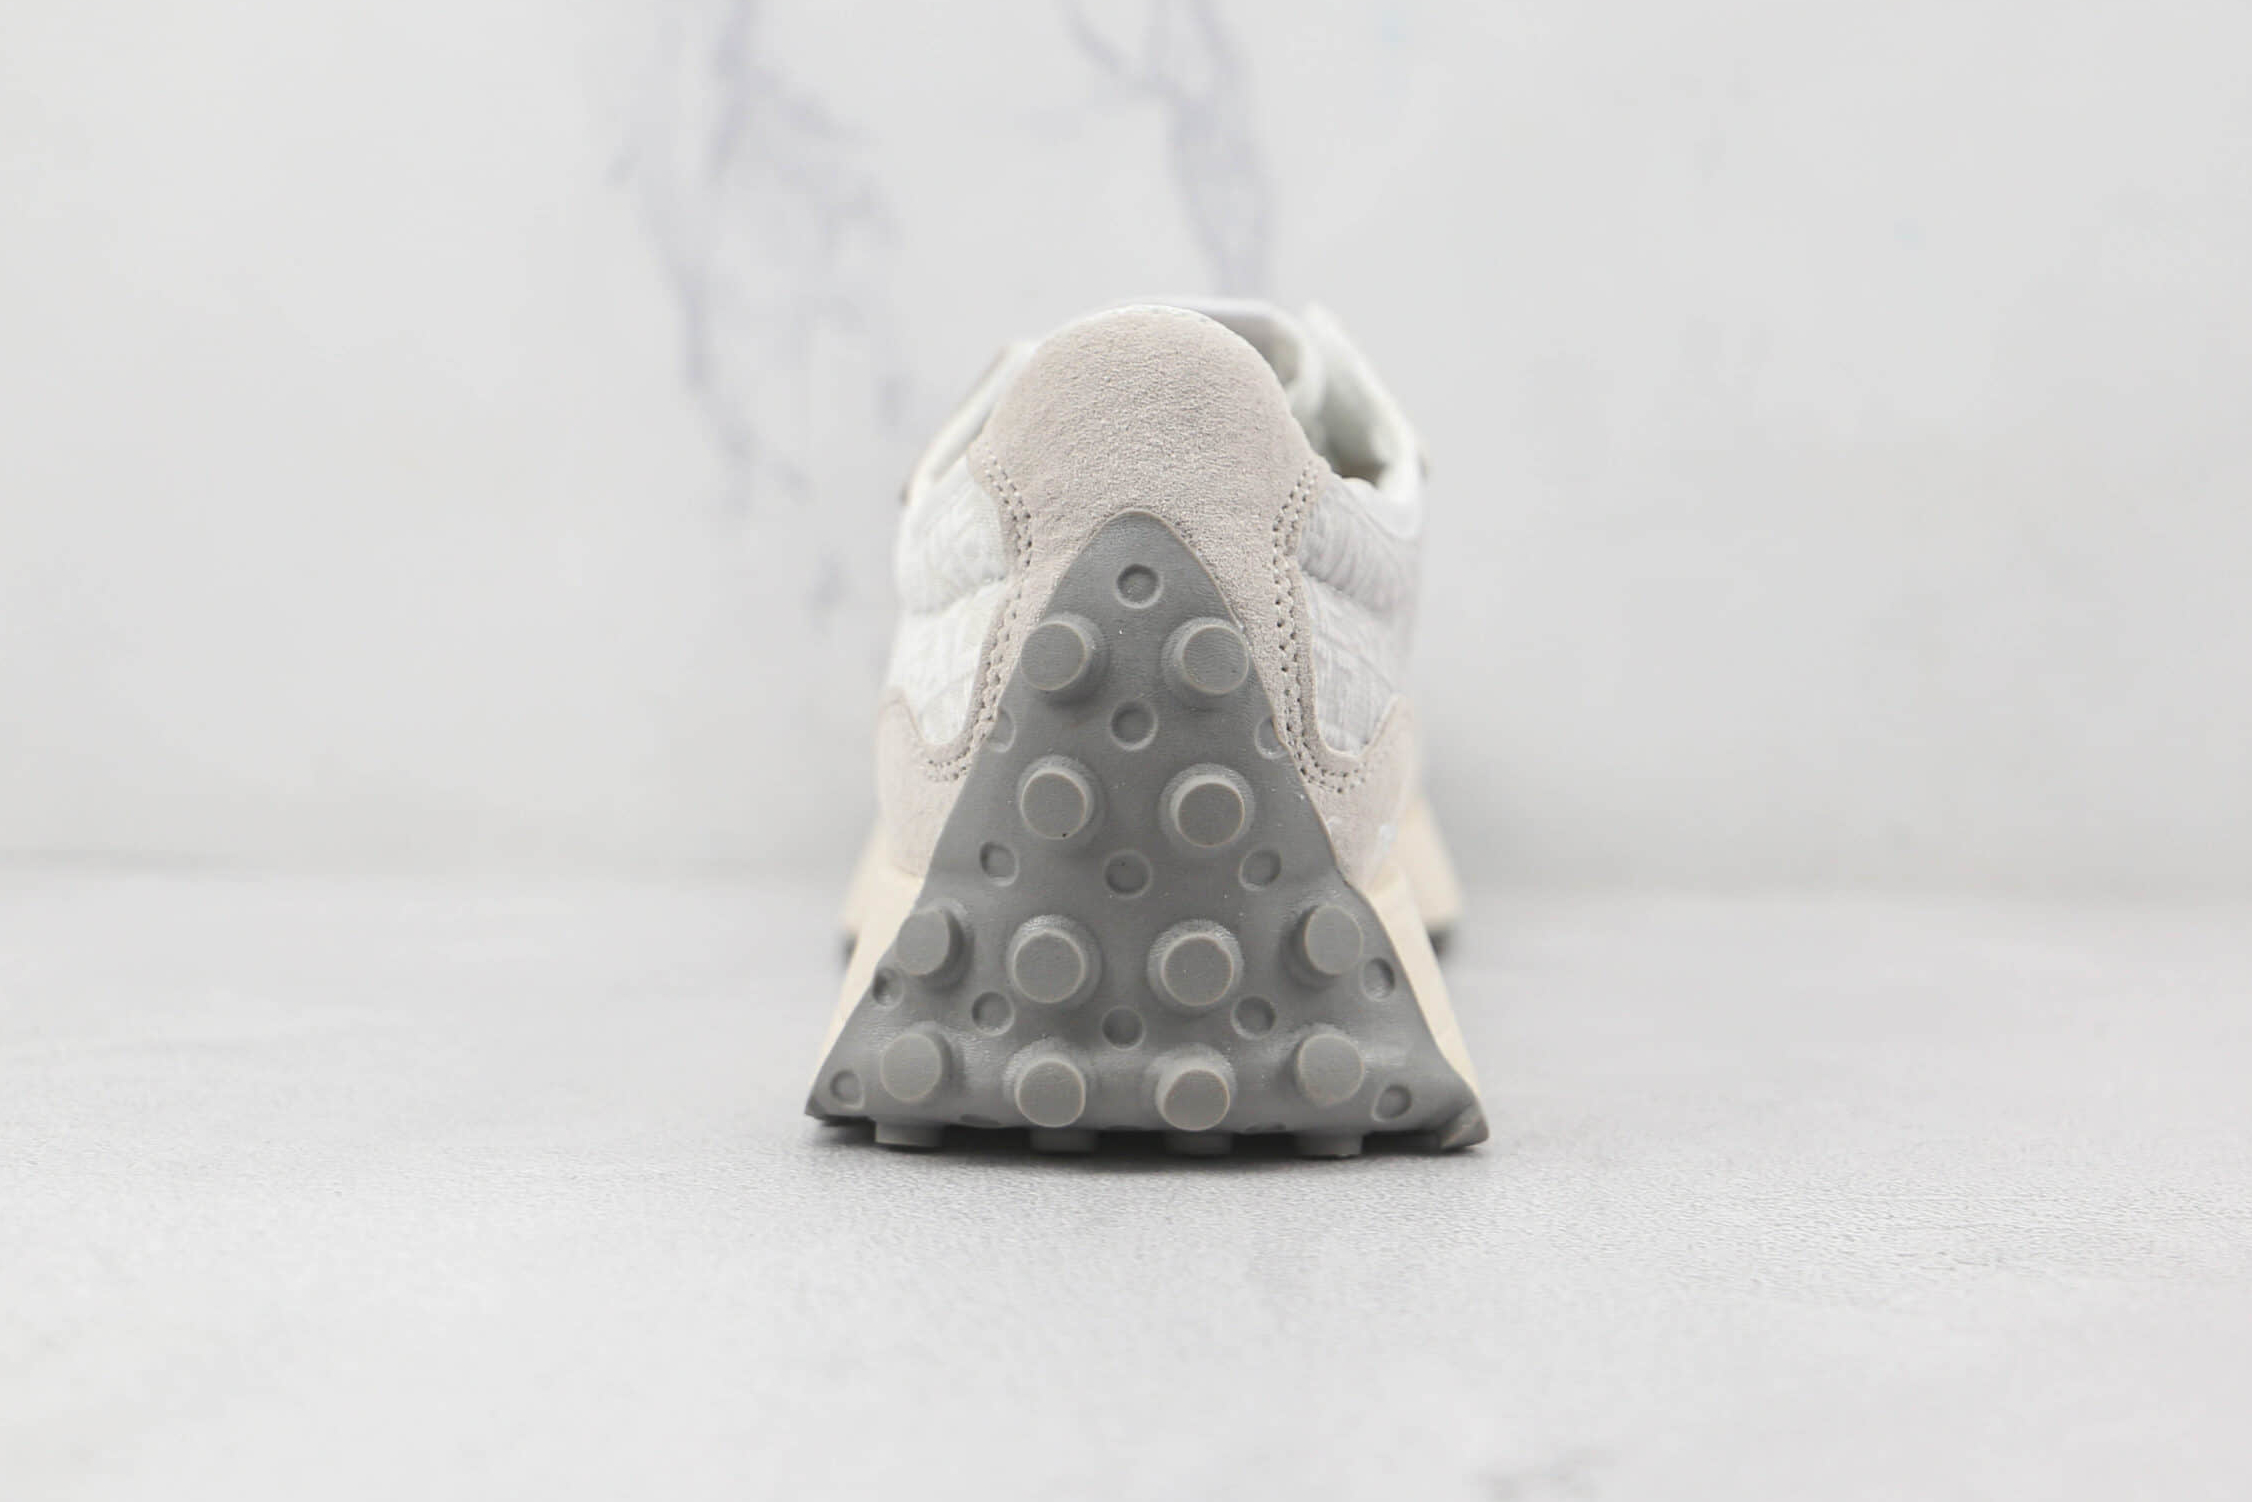 Noritake x New Balance 327 White Grey – Sleek and Stylish Athletic Footwear